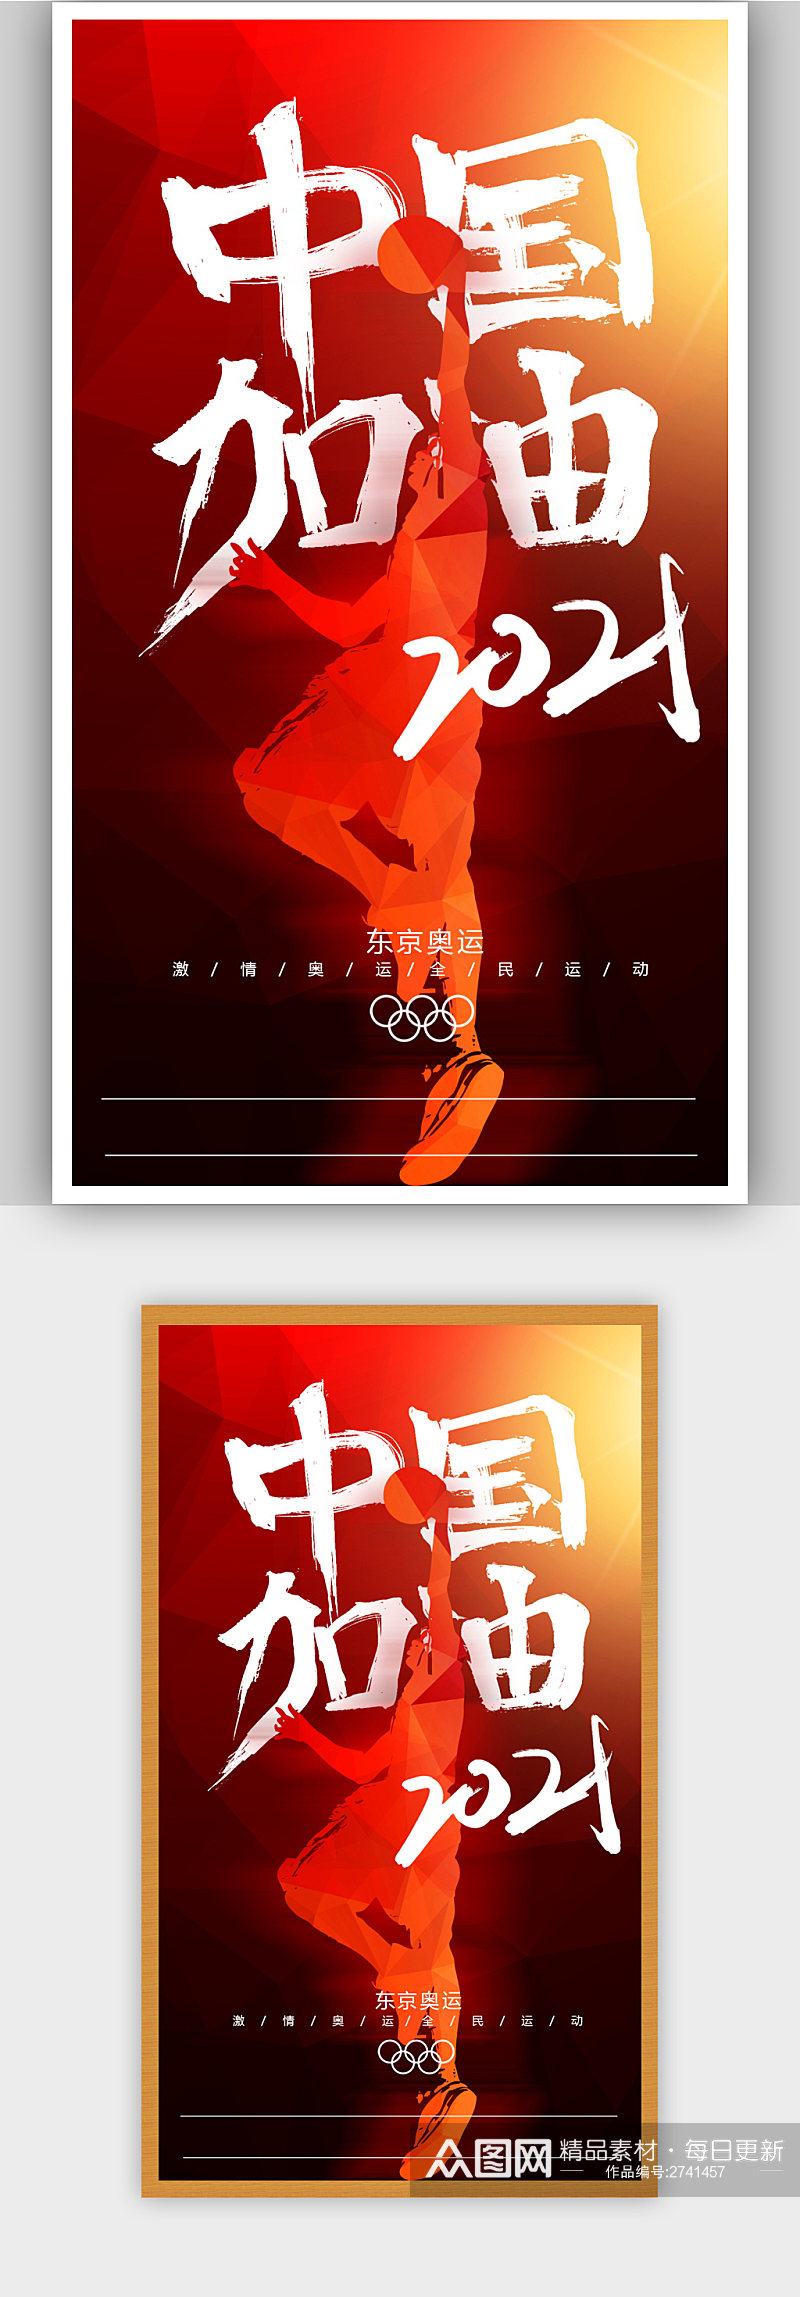 创意红色东京奥运宣传海报素材